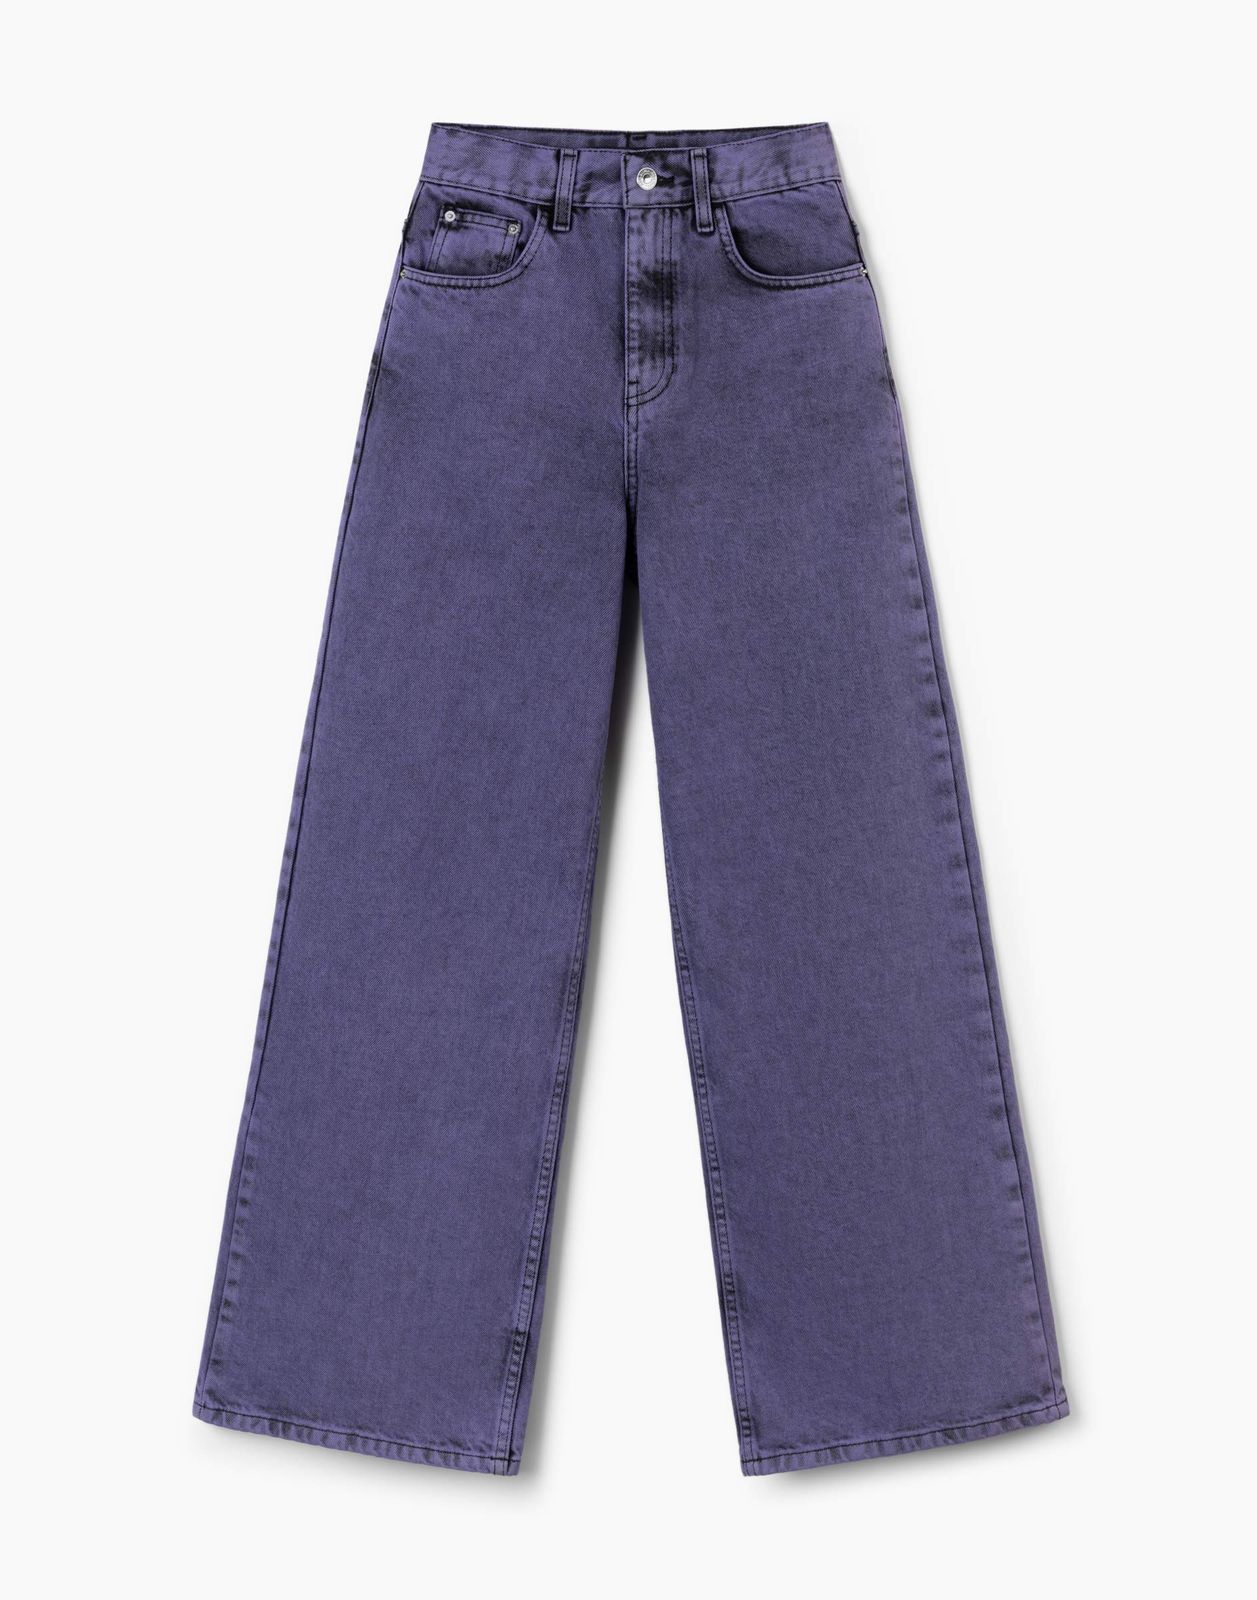 Джинсы детские Gloria Jeans GJN031150, черный/фиолетовый, 146 джинсы gloria jeans gjn031147 фиолетовый 10 12л 152